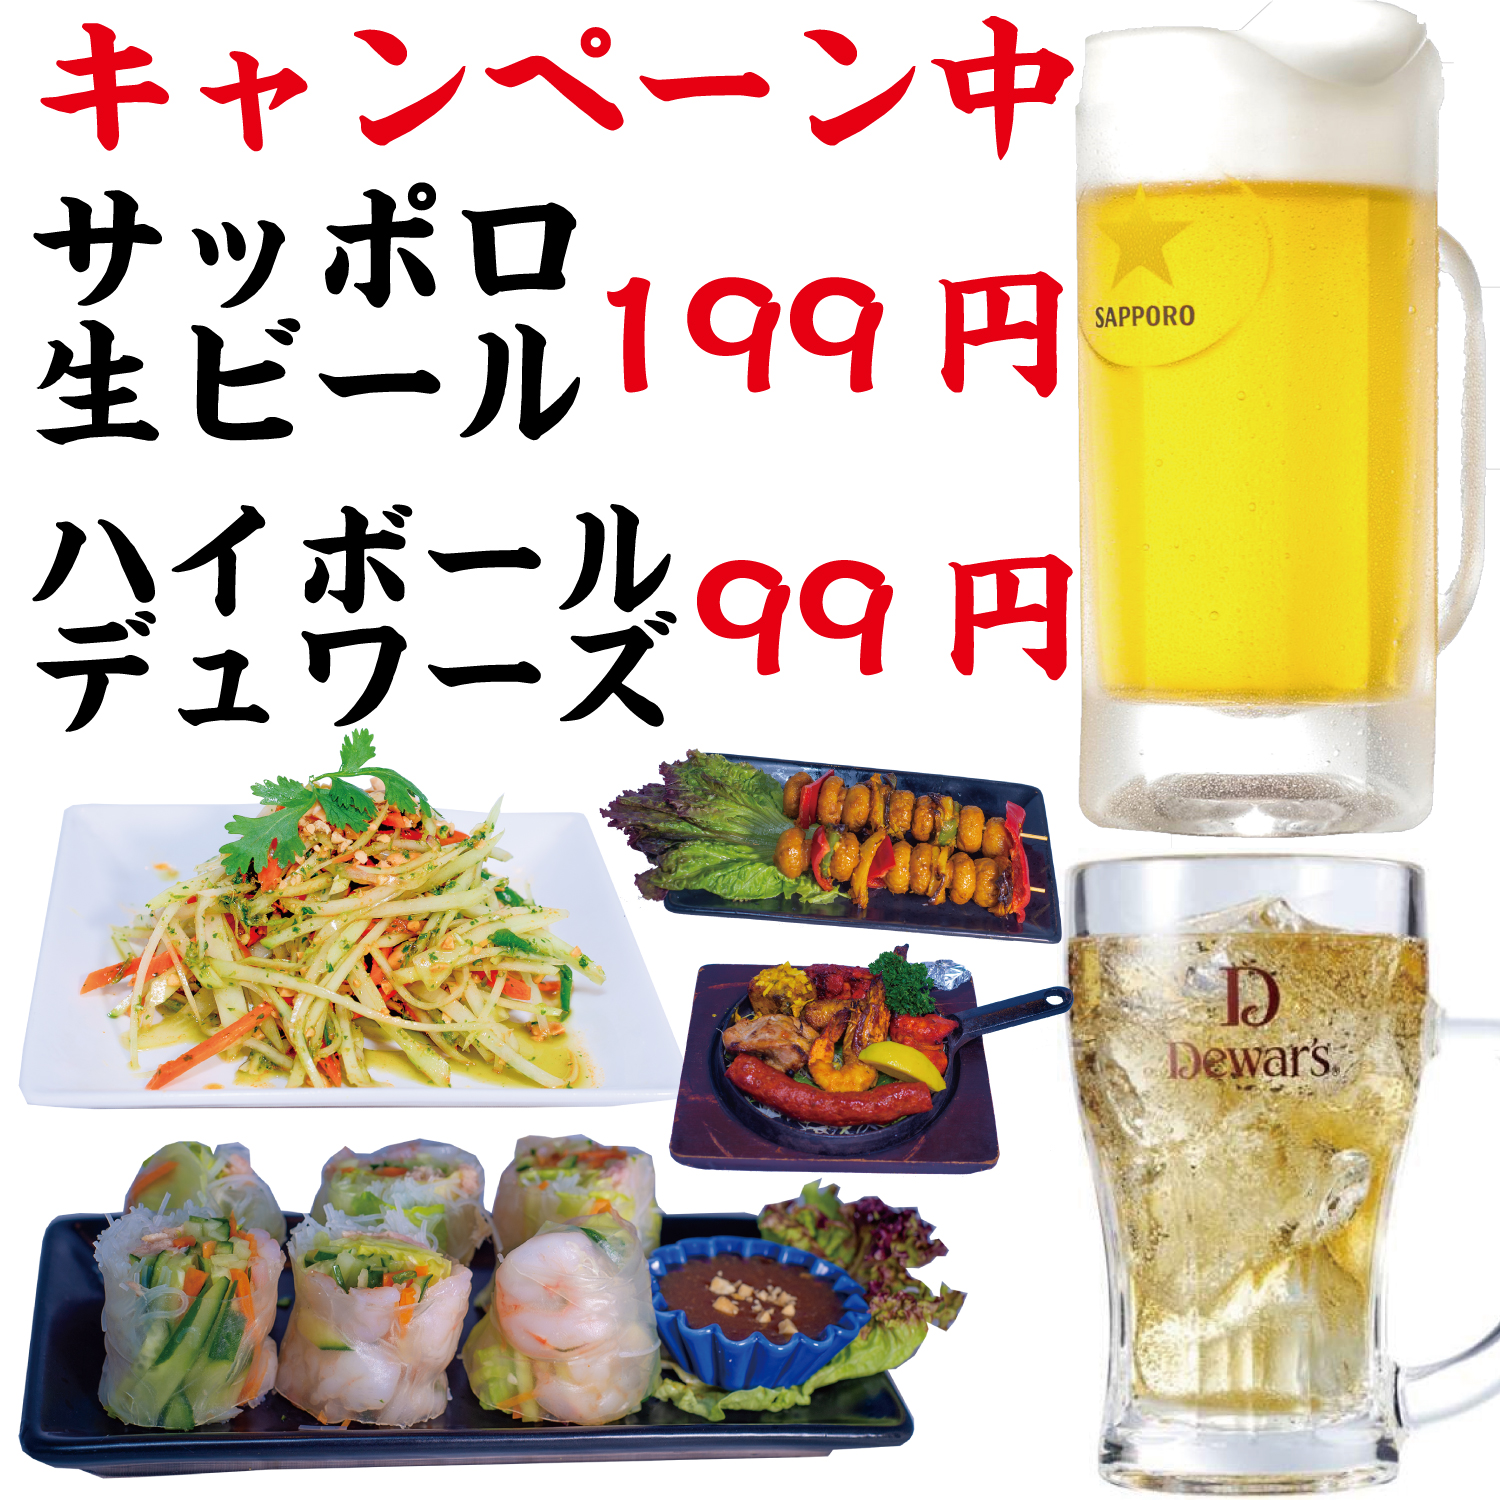 サッポロ生ビール199円、ハイボールデュワーズ99円